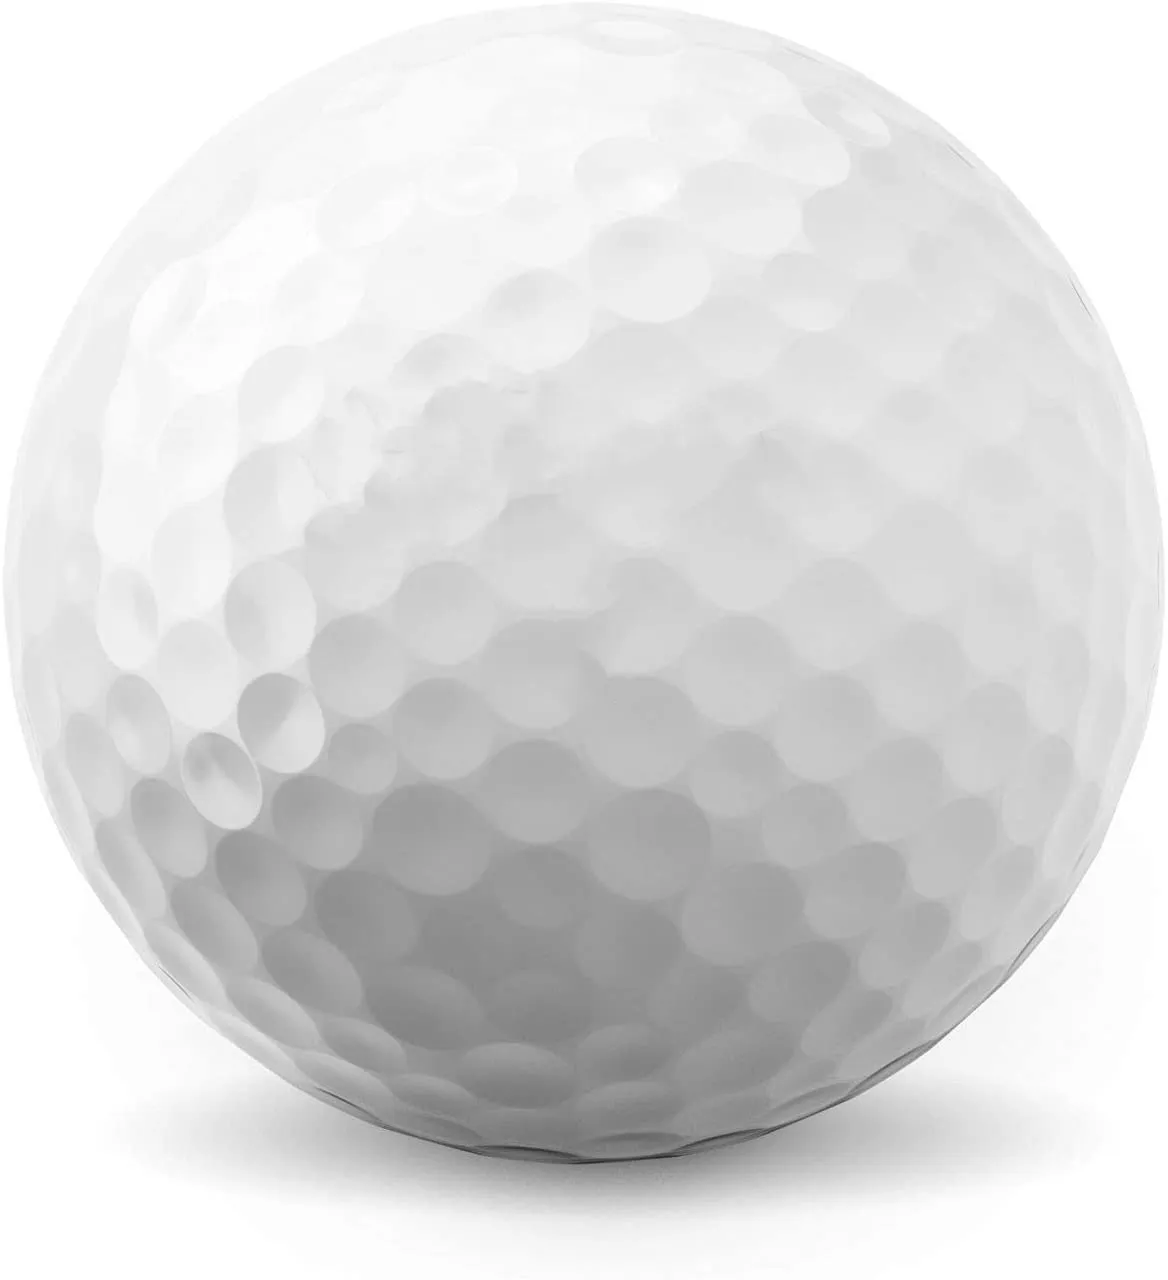 2021 تصميم جديد جودة عالية 2 3 4 قطعة Usga مطابقة الملحقات المخصصة يوريتان لينة البطولة المسار الثلاثي كرة جولف